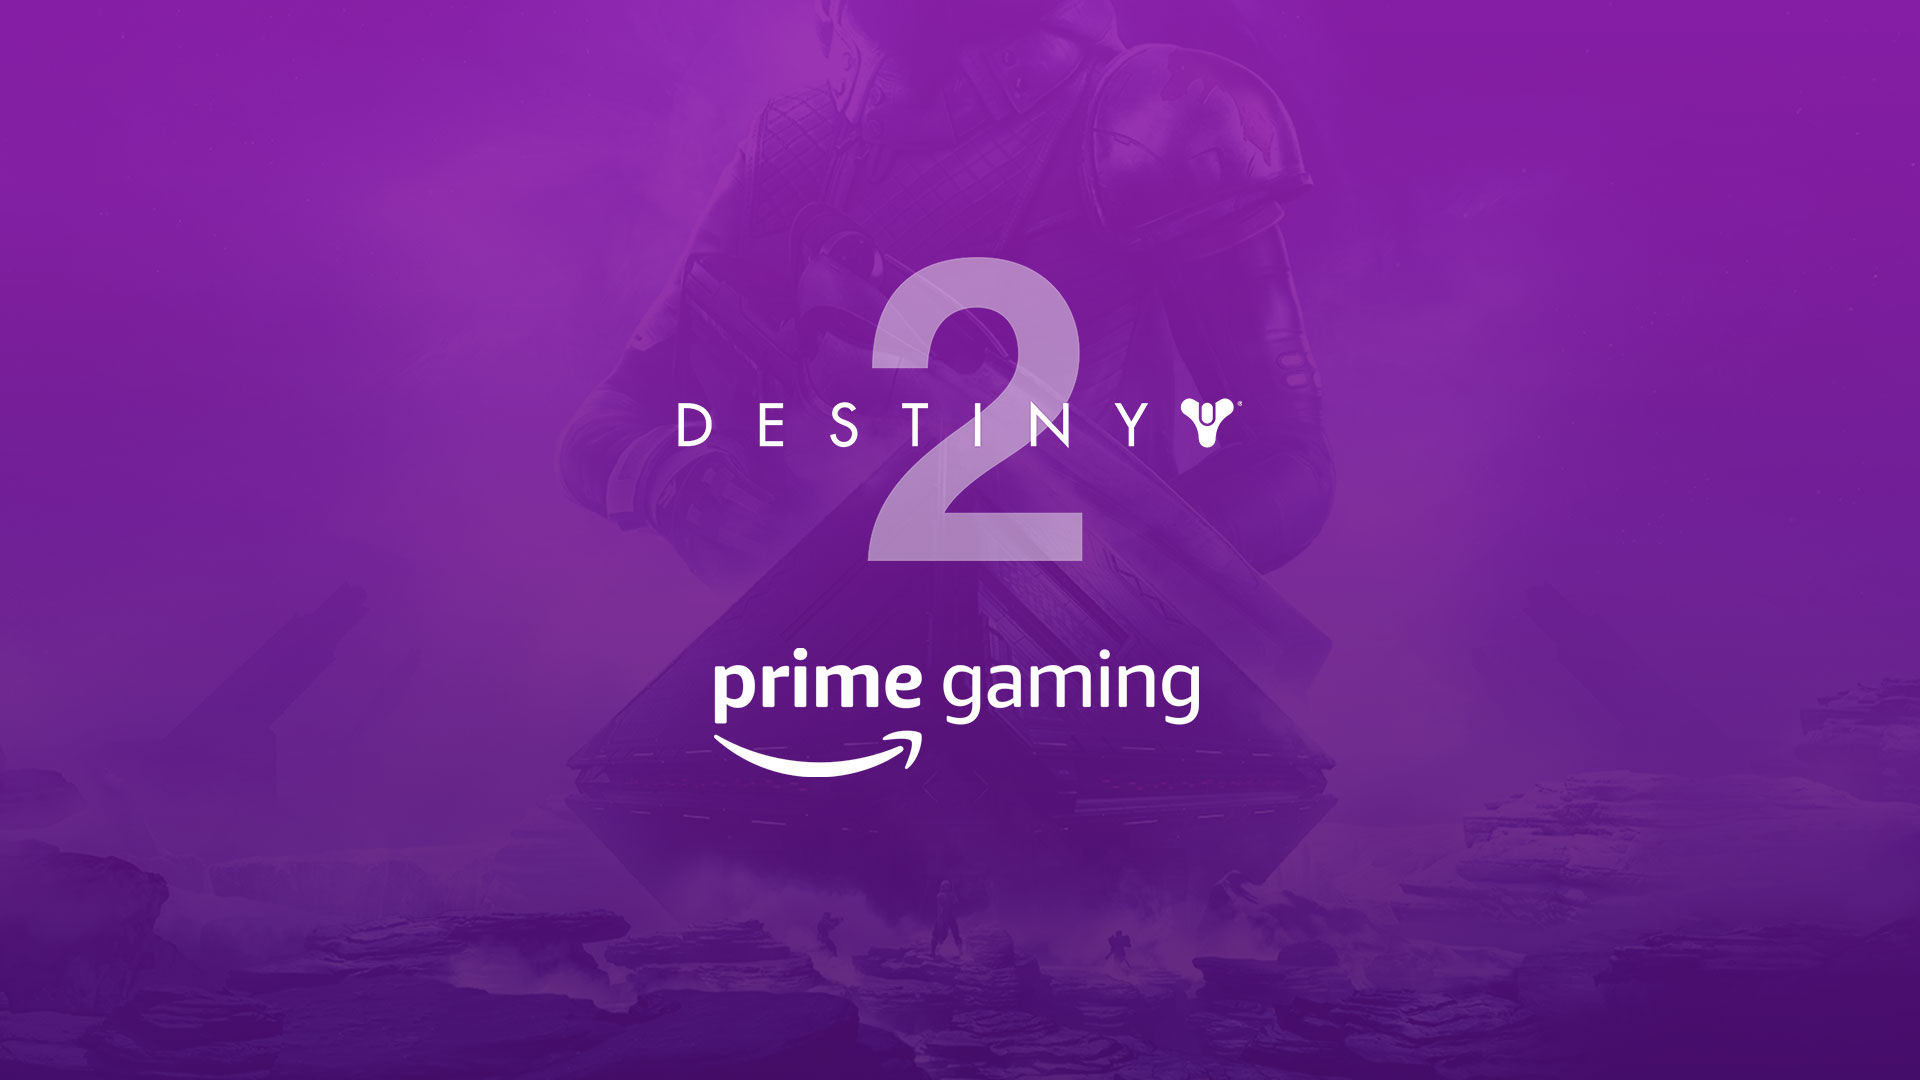 Активация наборов в Destiny 2 по подписке Prime Gaming